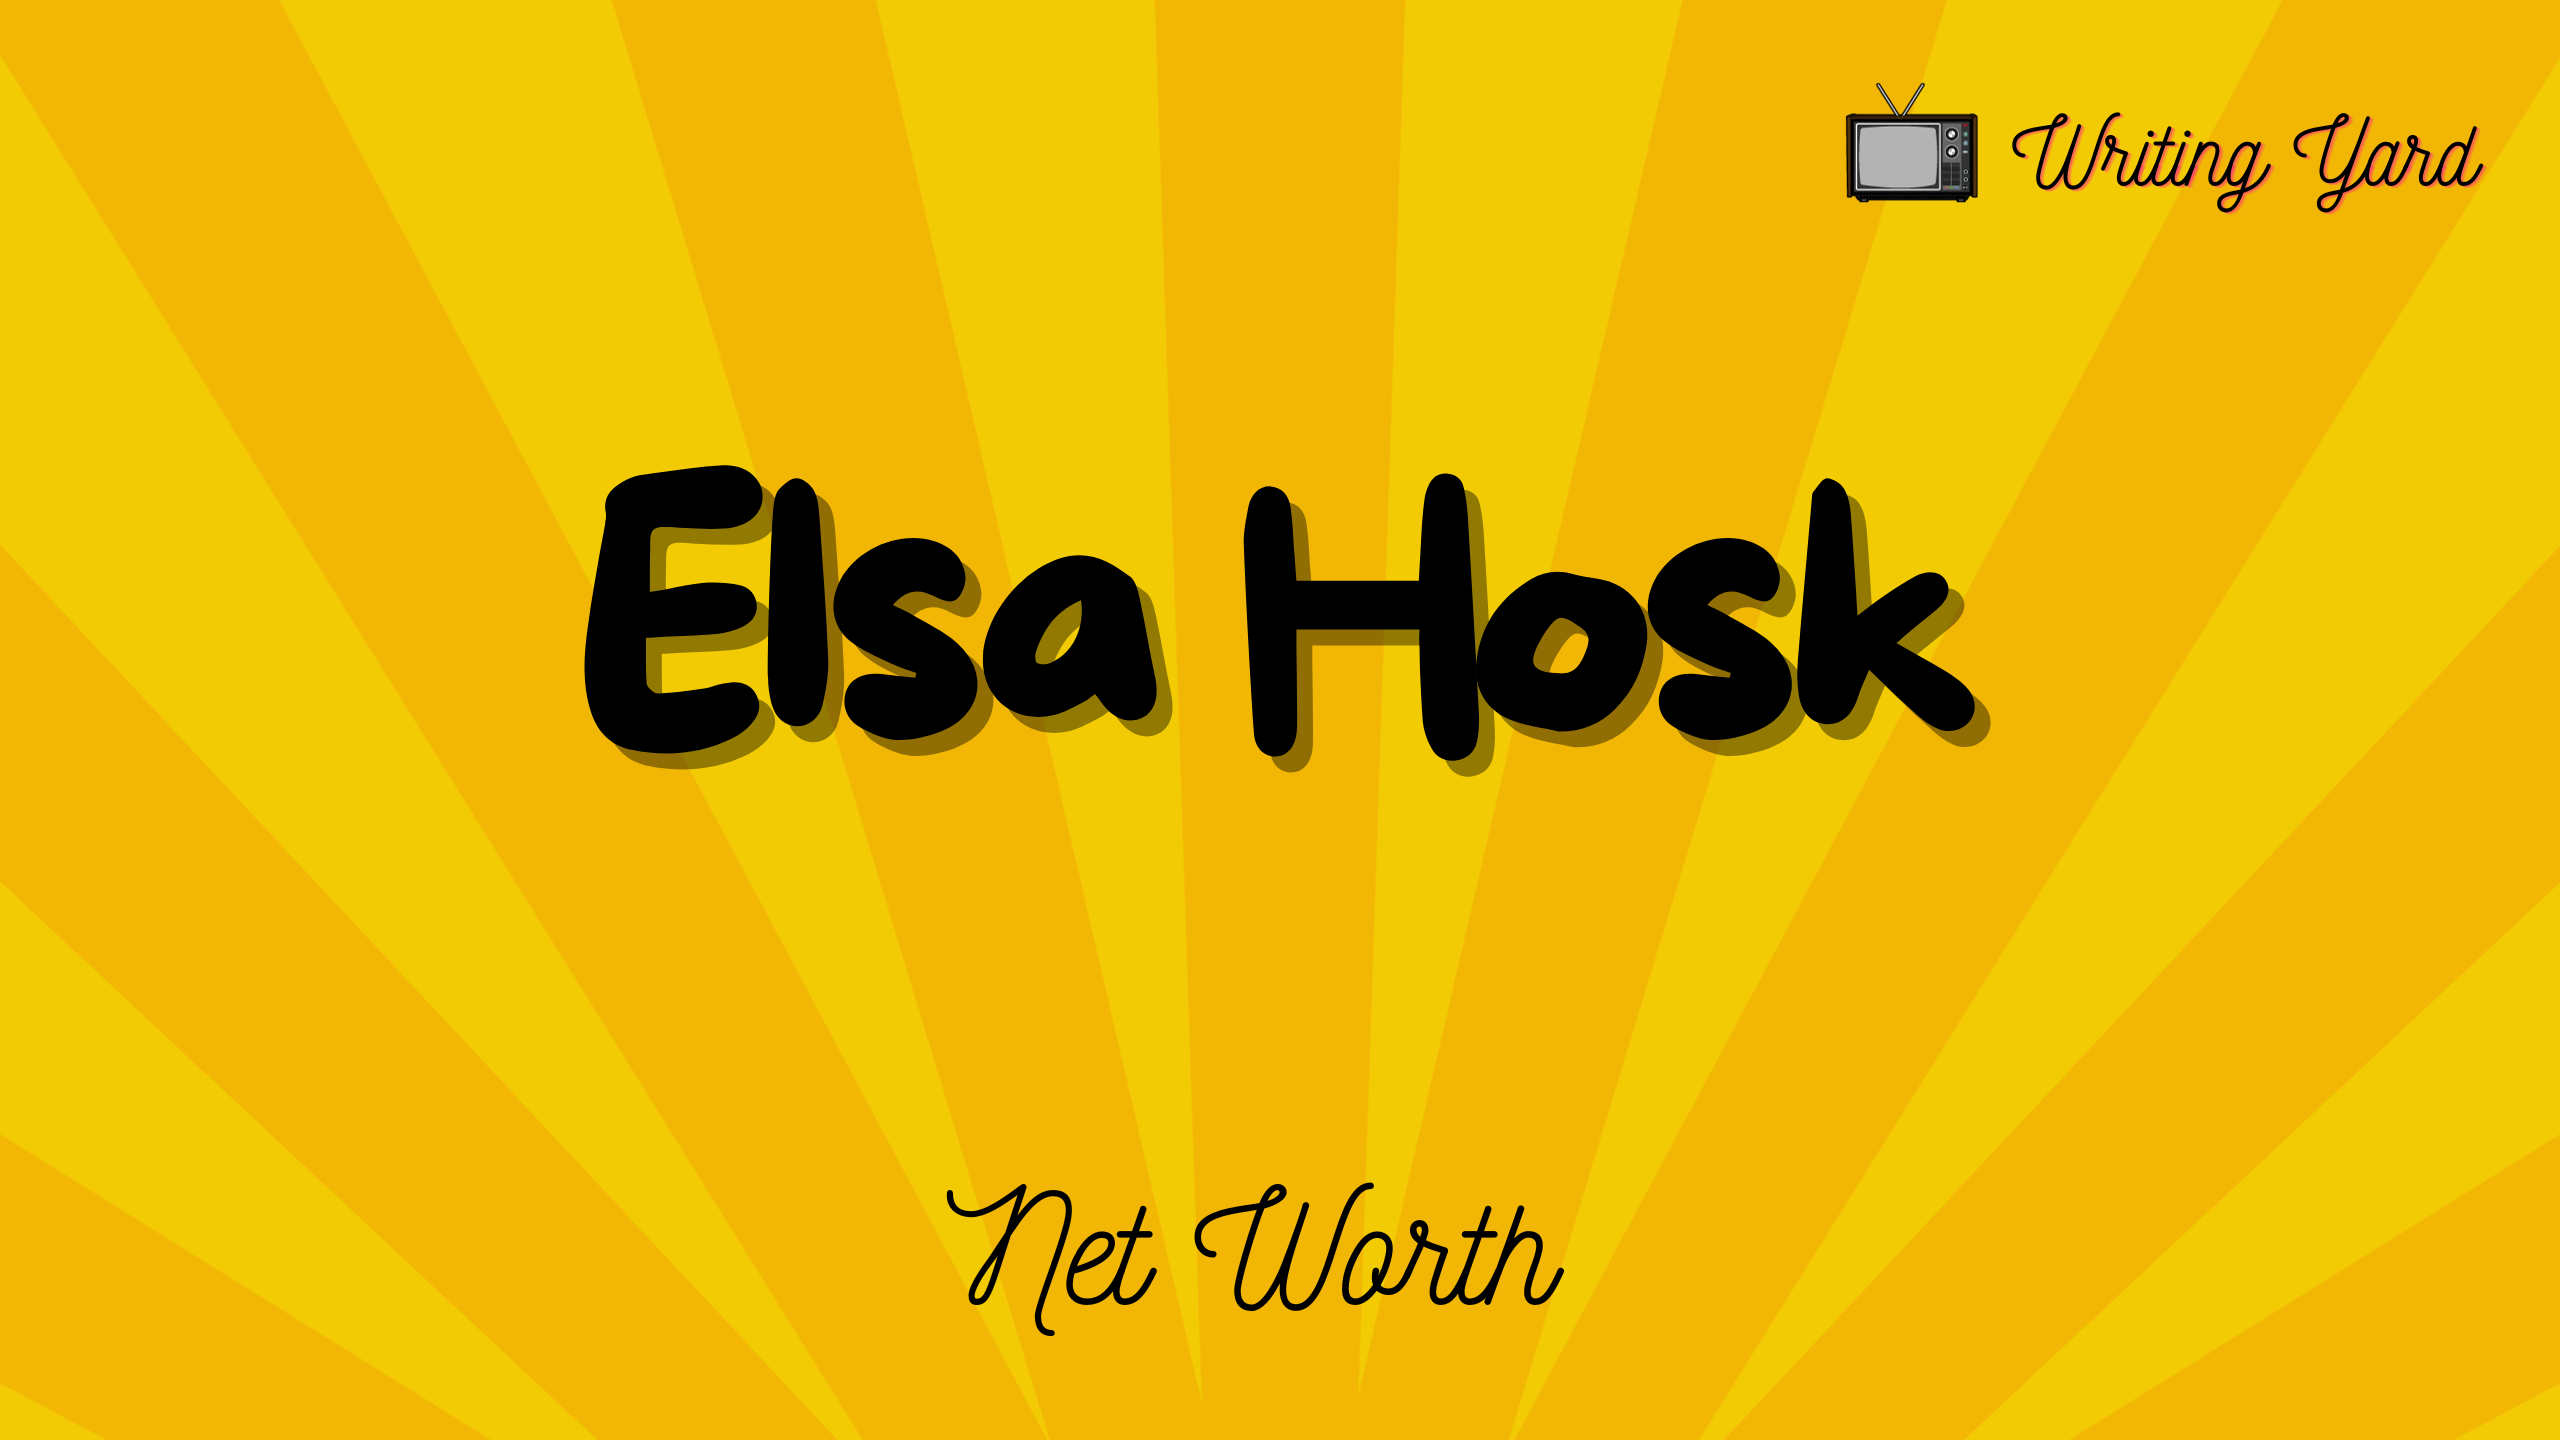 Elsa Hosk Net Worth